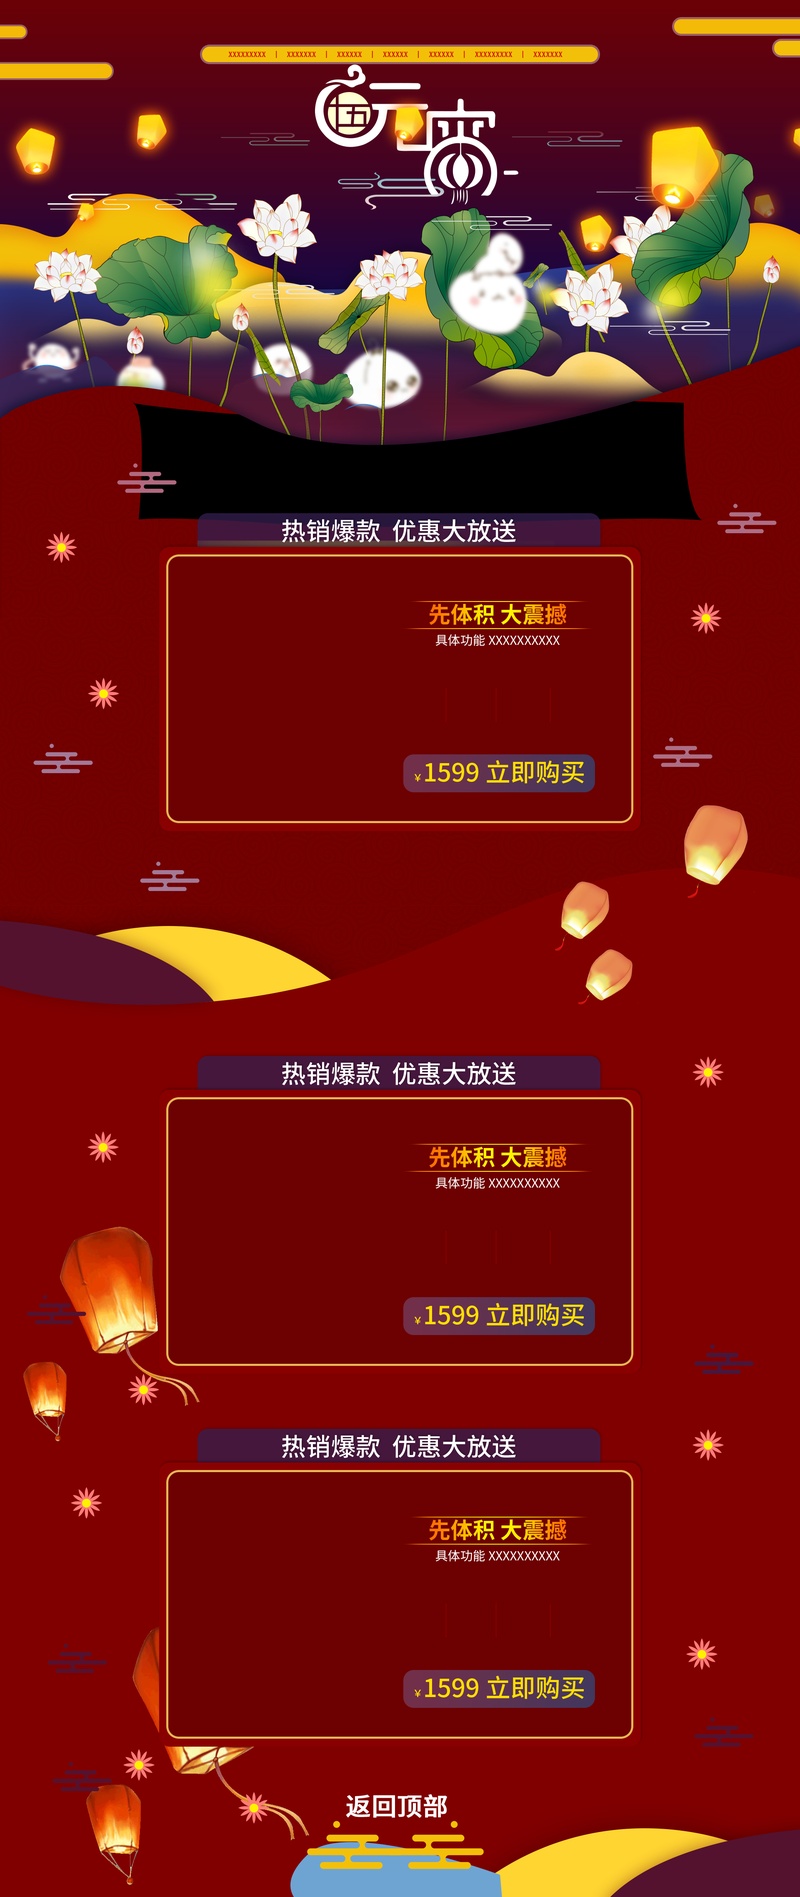 中国风电器PC端首页装修活动页面专题 